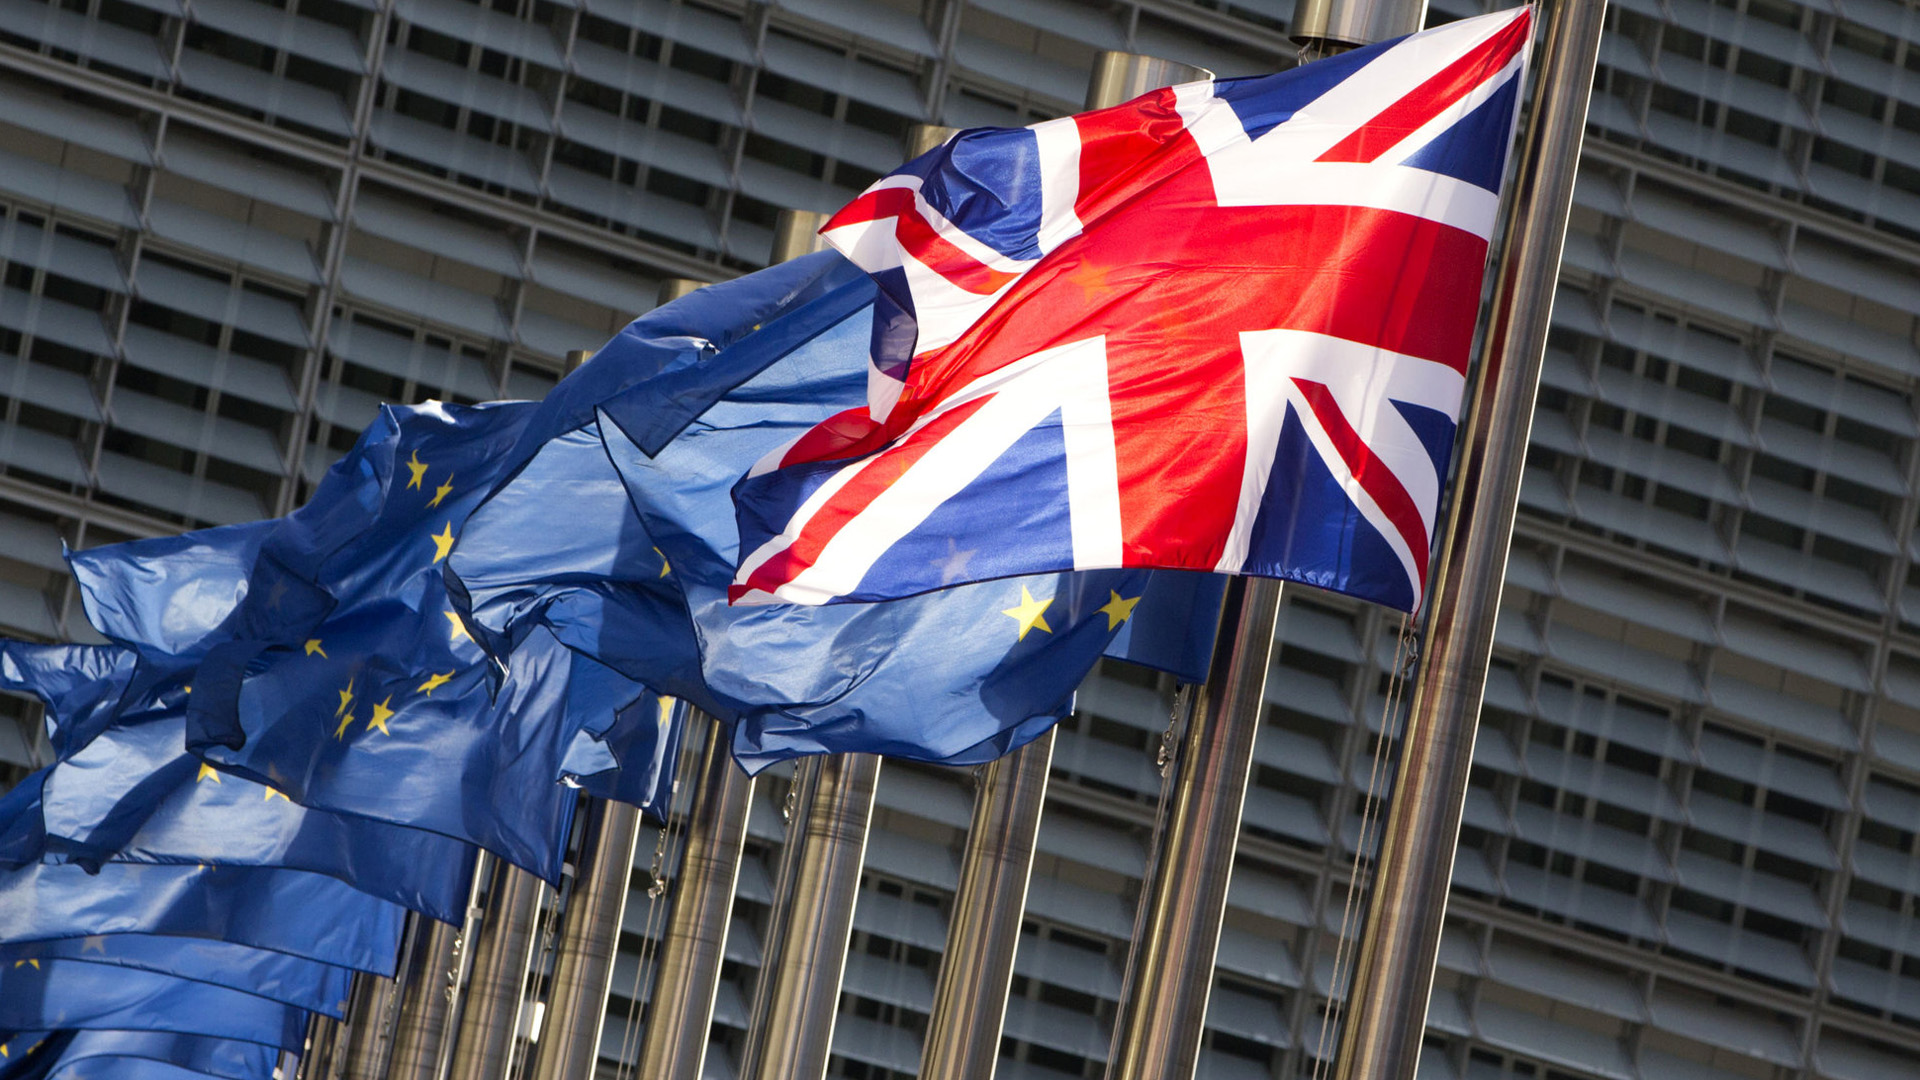 Fahnen der EU und Großbritanniens wehen in Brüssel | AP